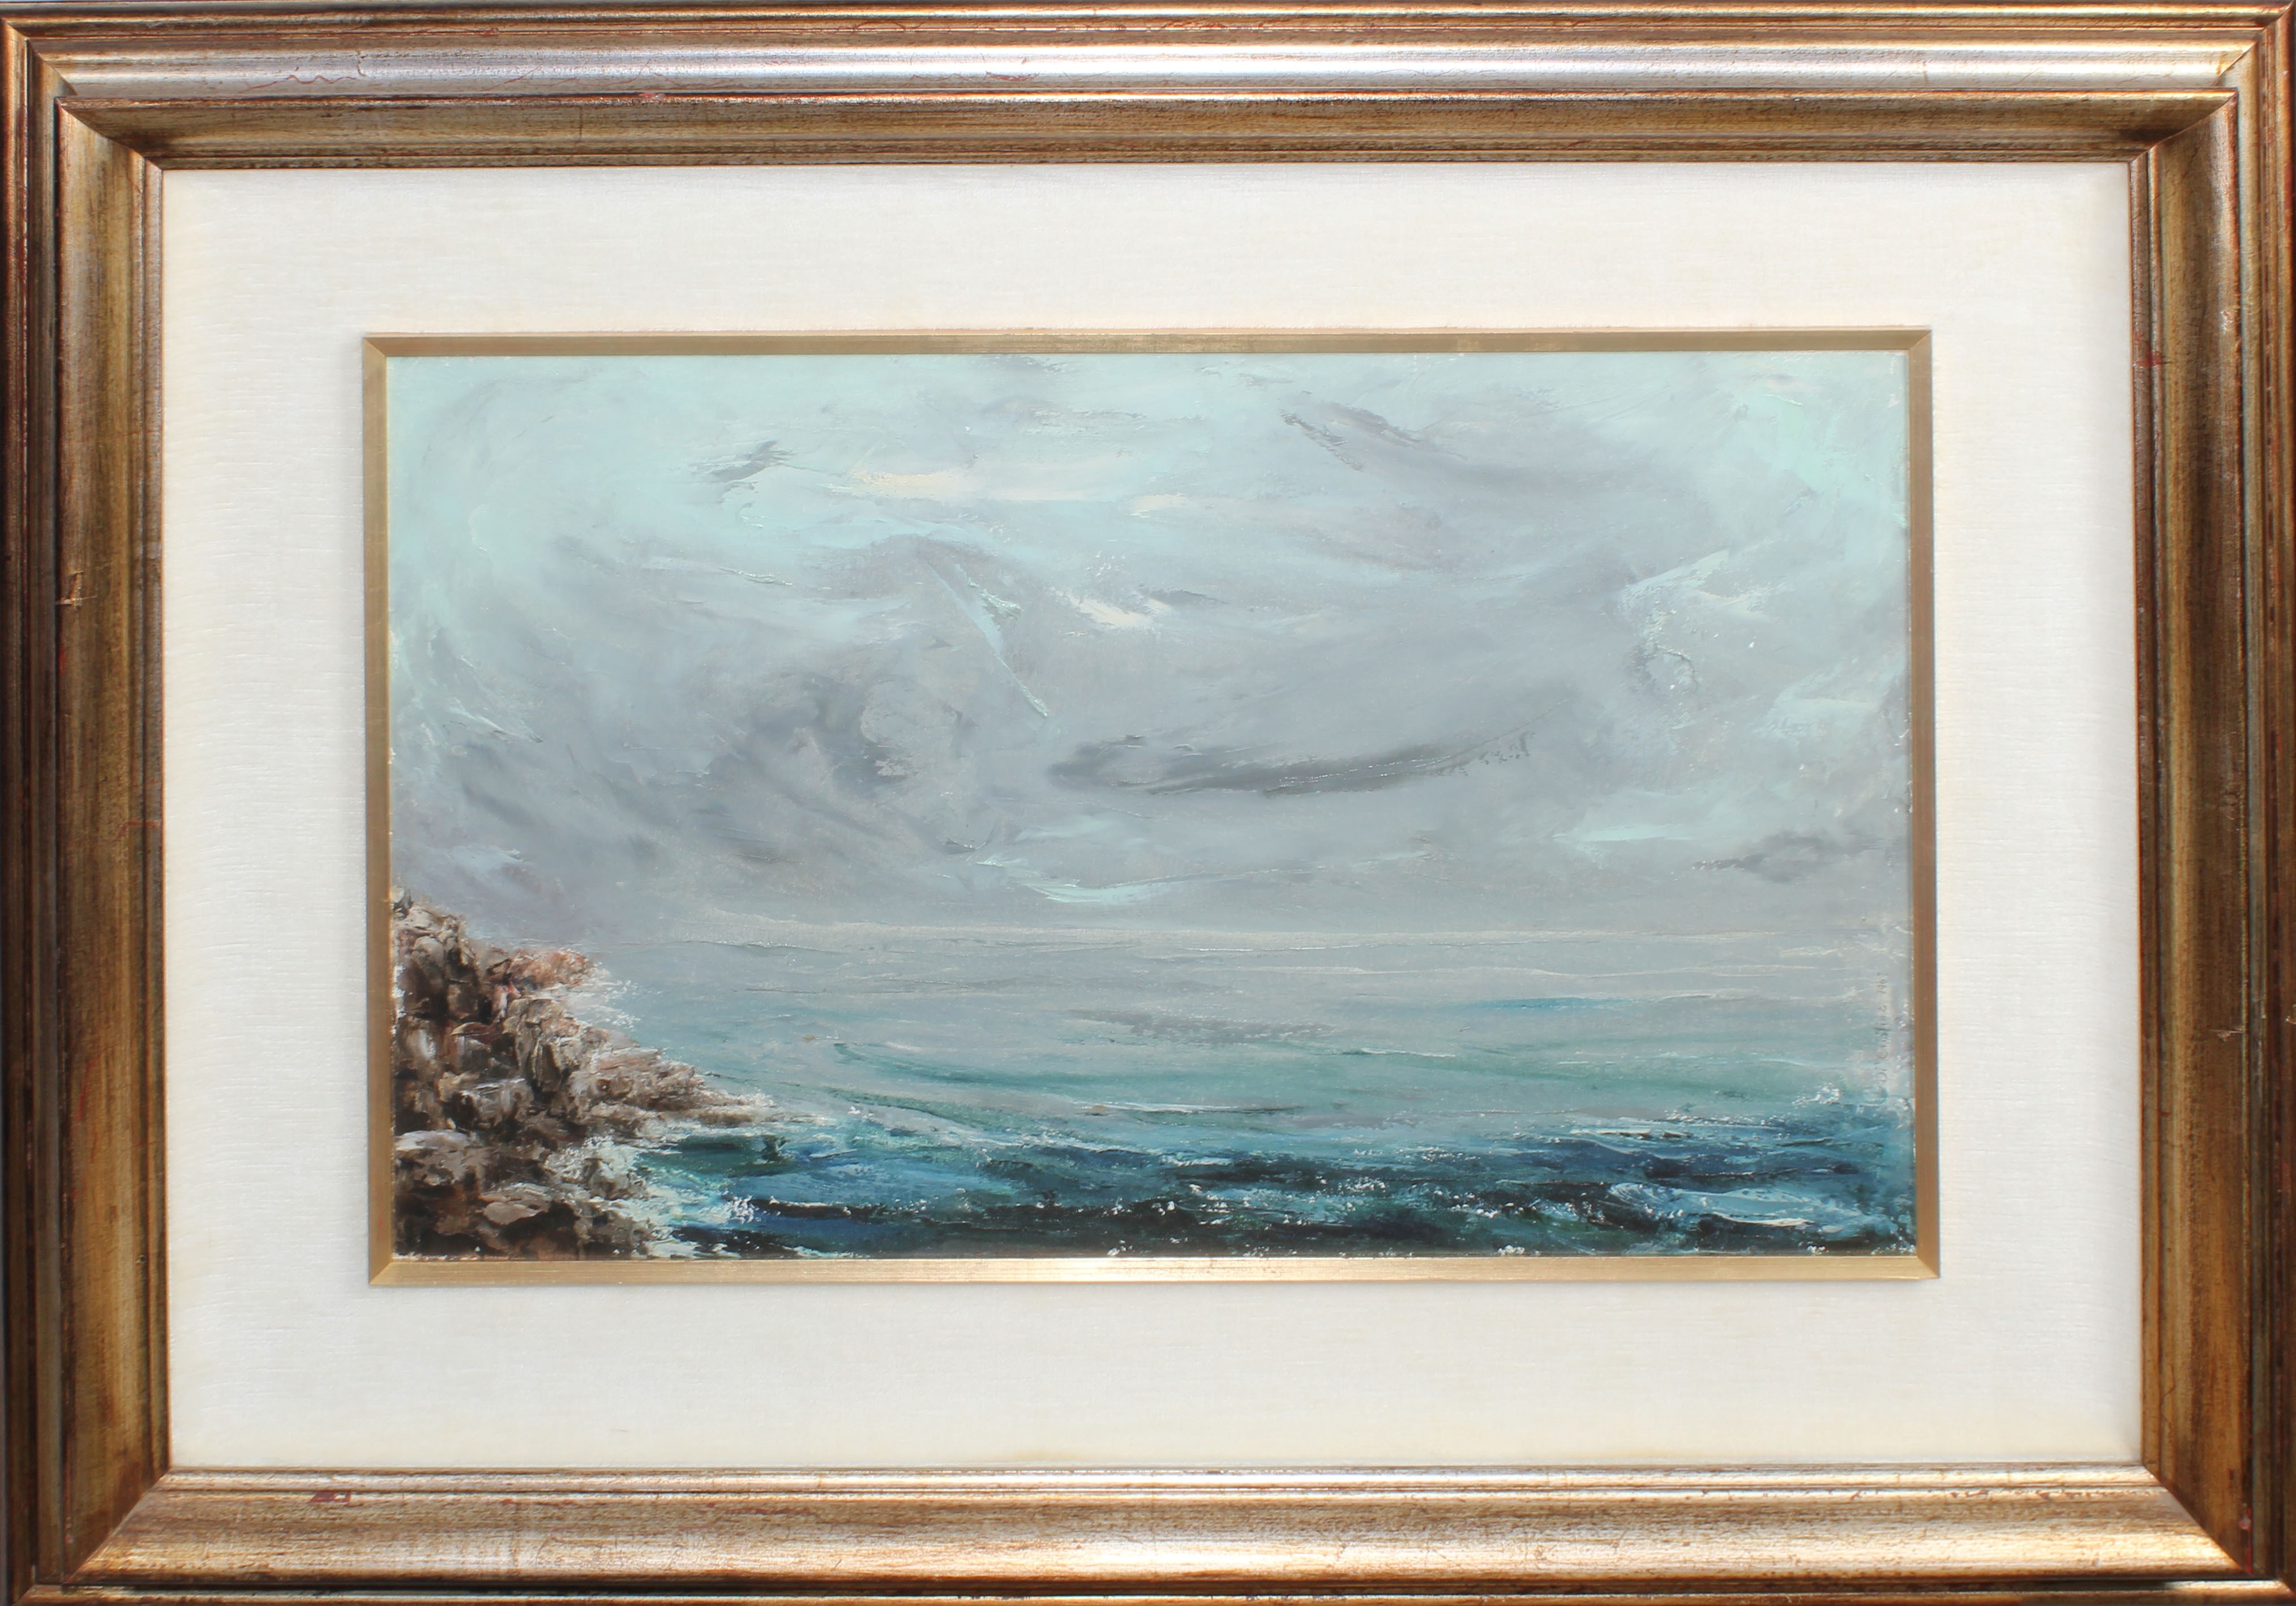 Paesaggio marino, a firma Di Cristina 1967, olio su tela, cm. 58x38